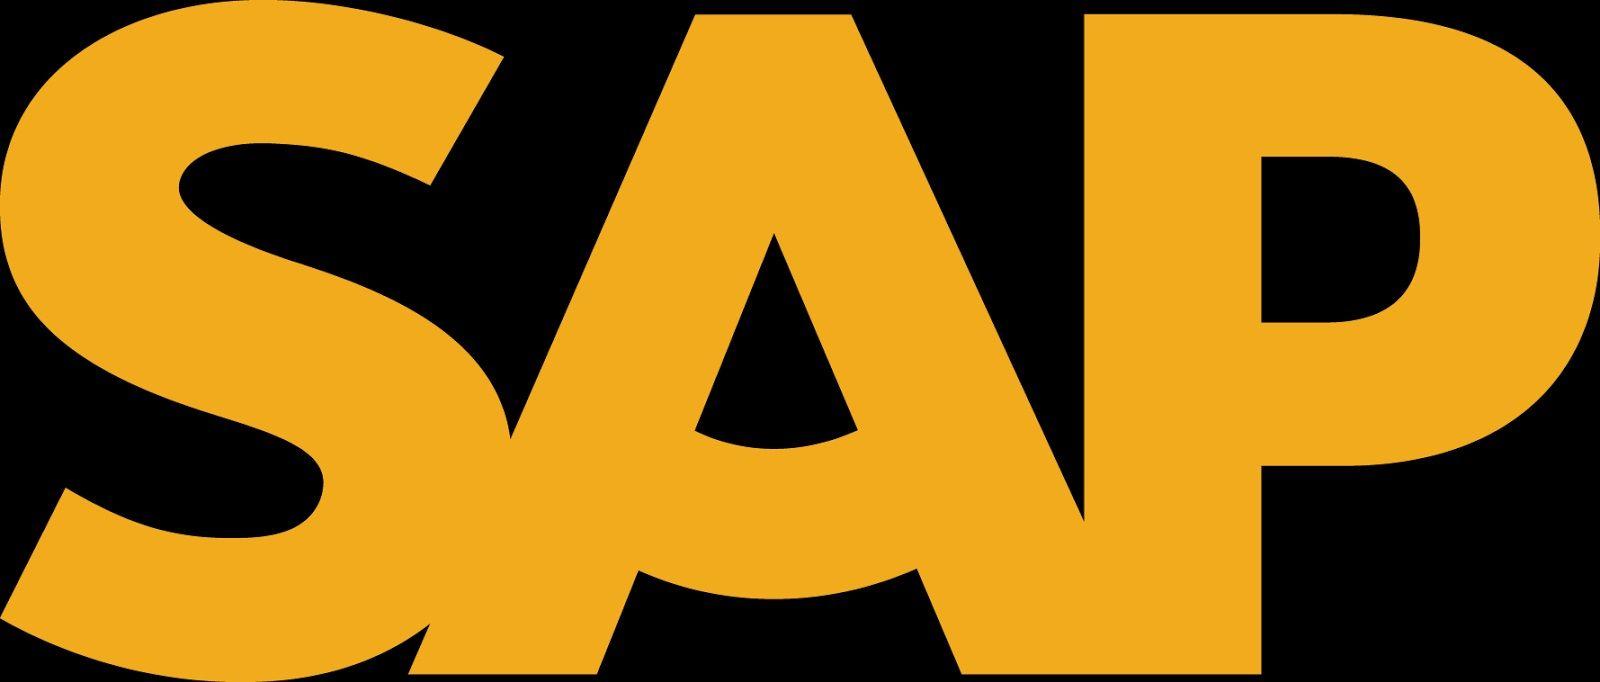 New SAP Logo - SAP Has Released New Logo | SAPBASISINFO